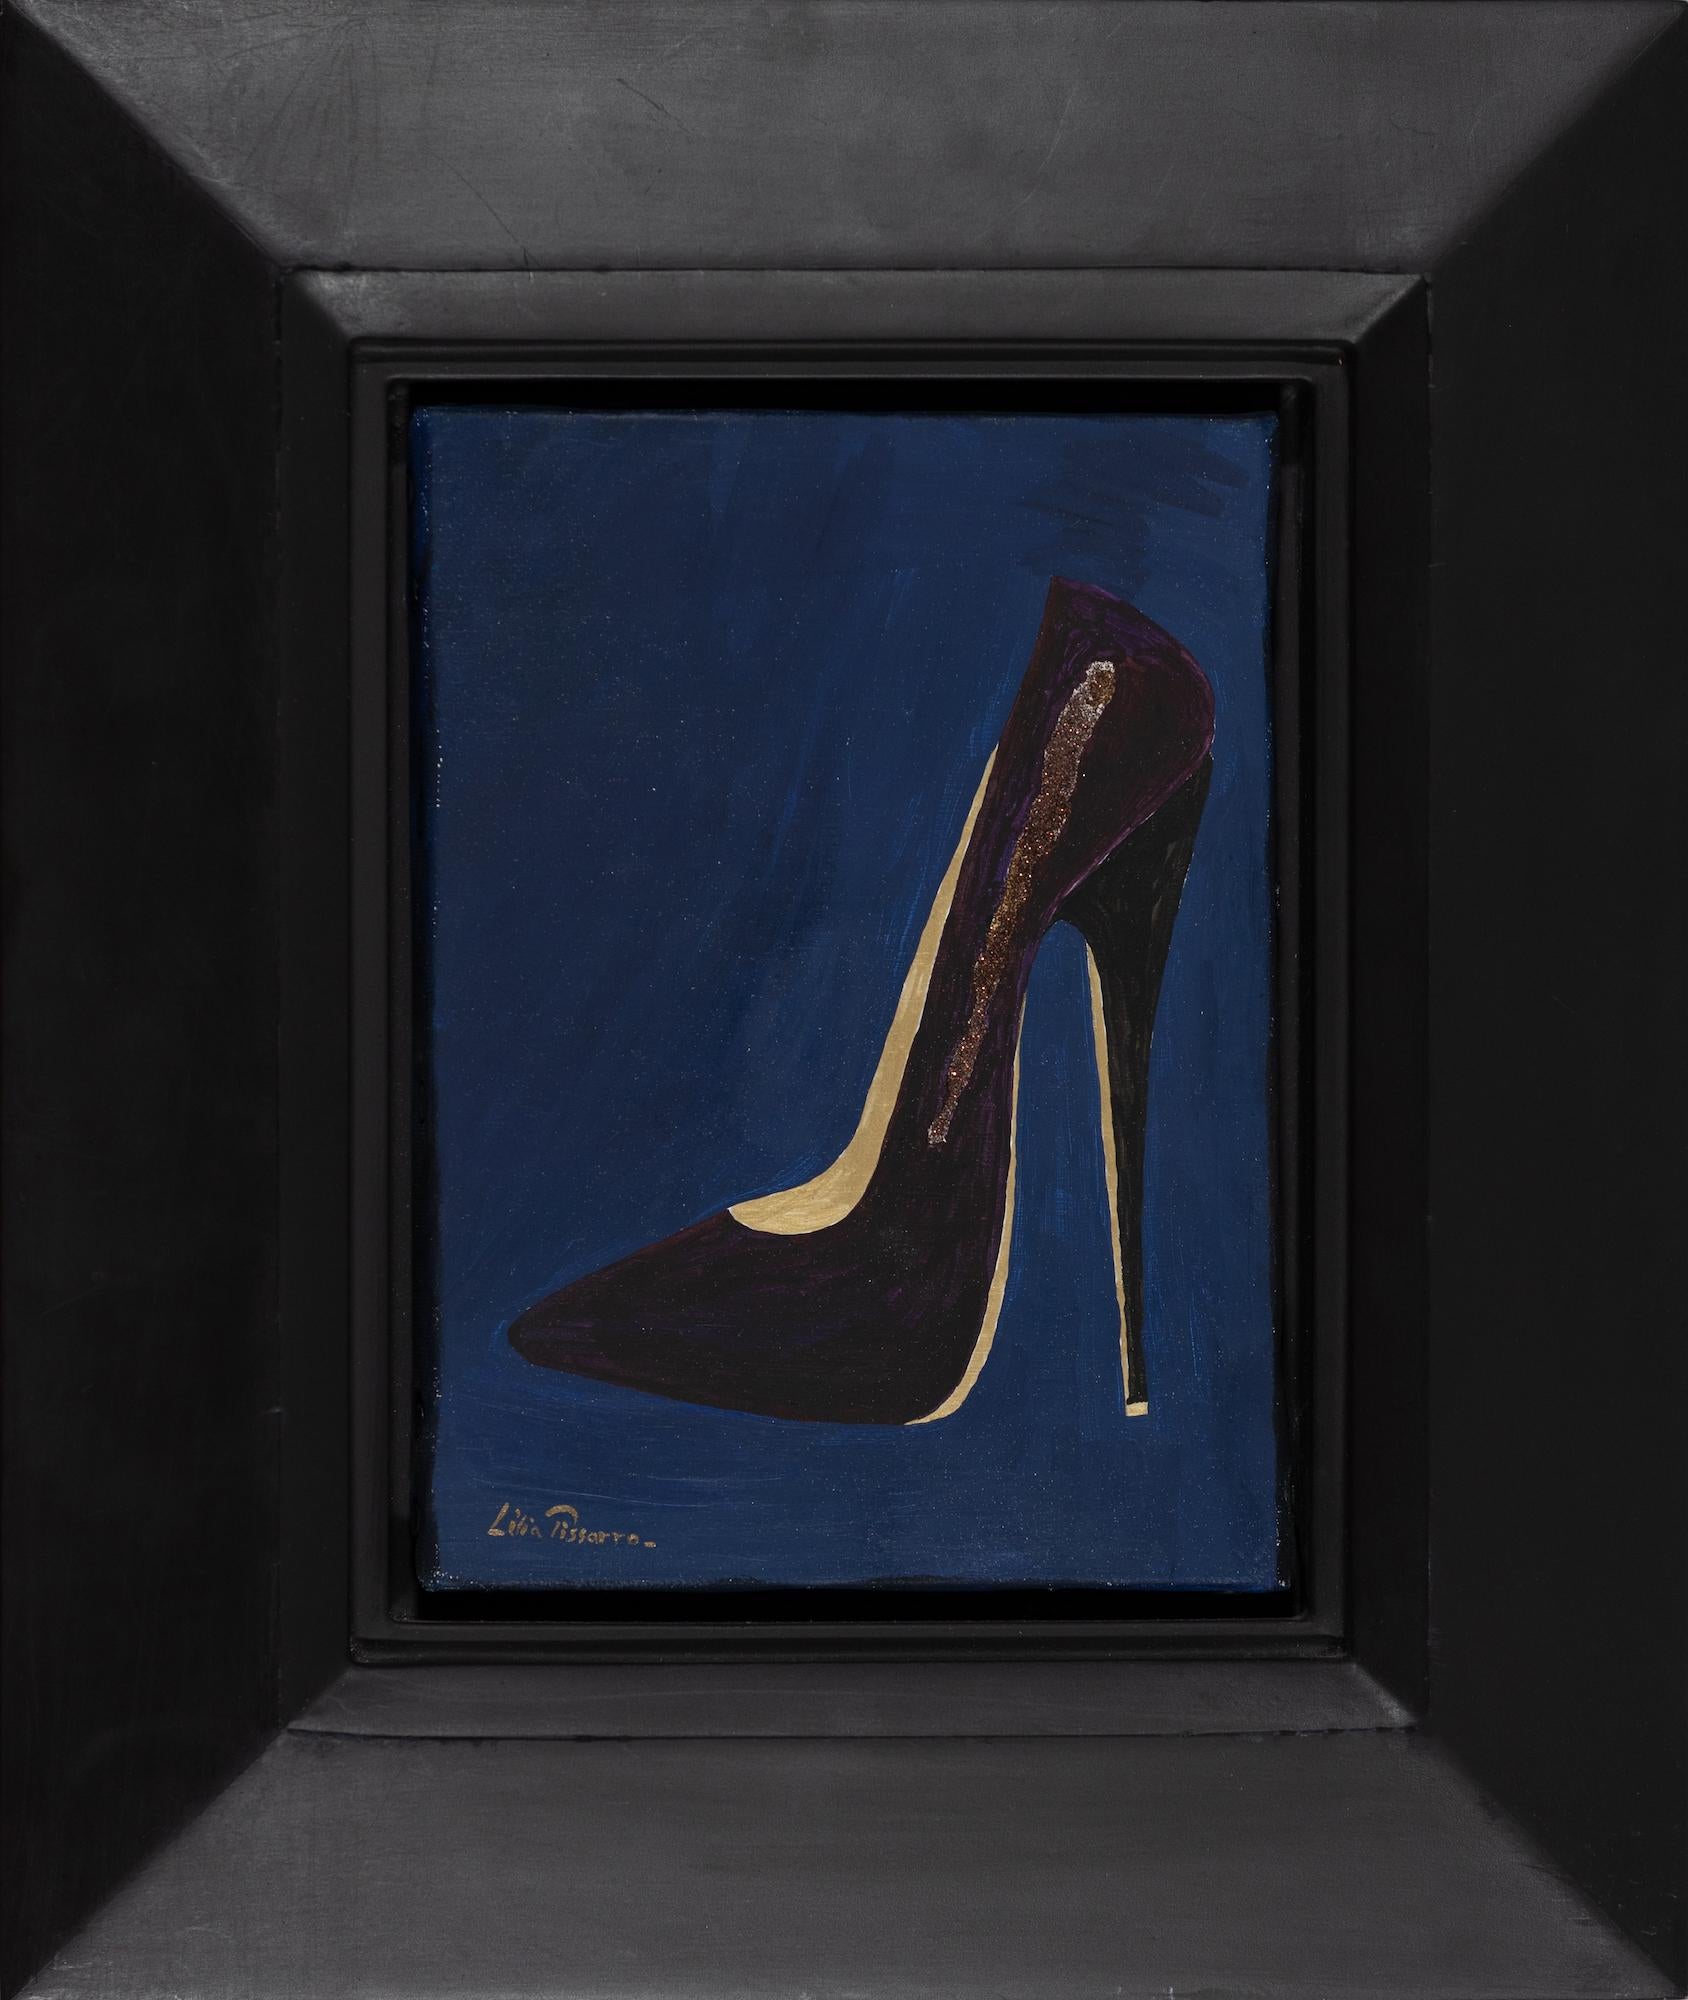 Stiletto 1 de Lélia Pissarro - Peinture contemporaine de chaussures - Painting de Lelia Pissarro